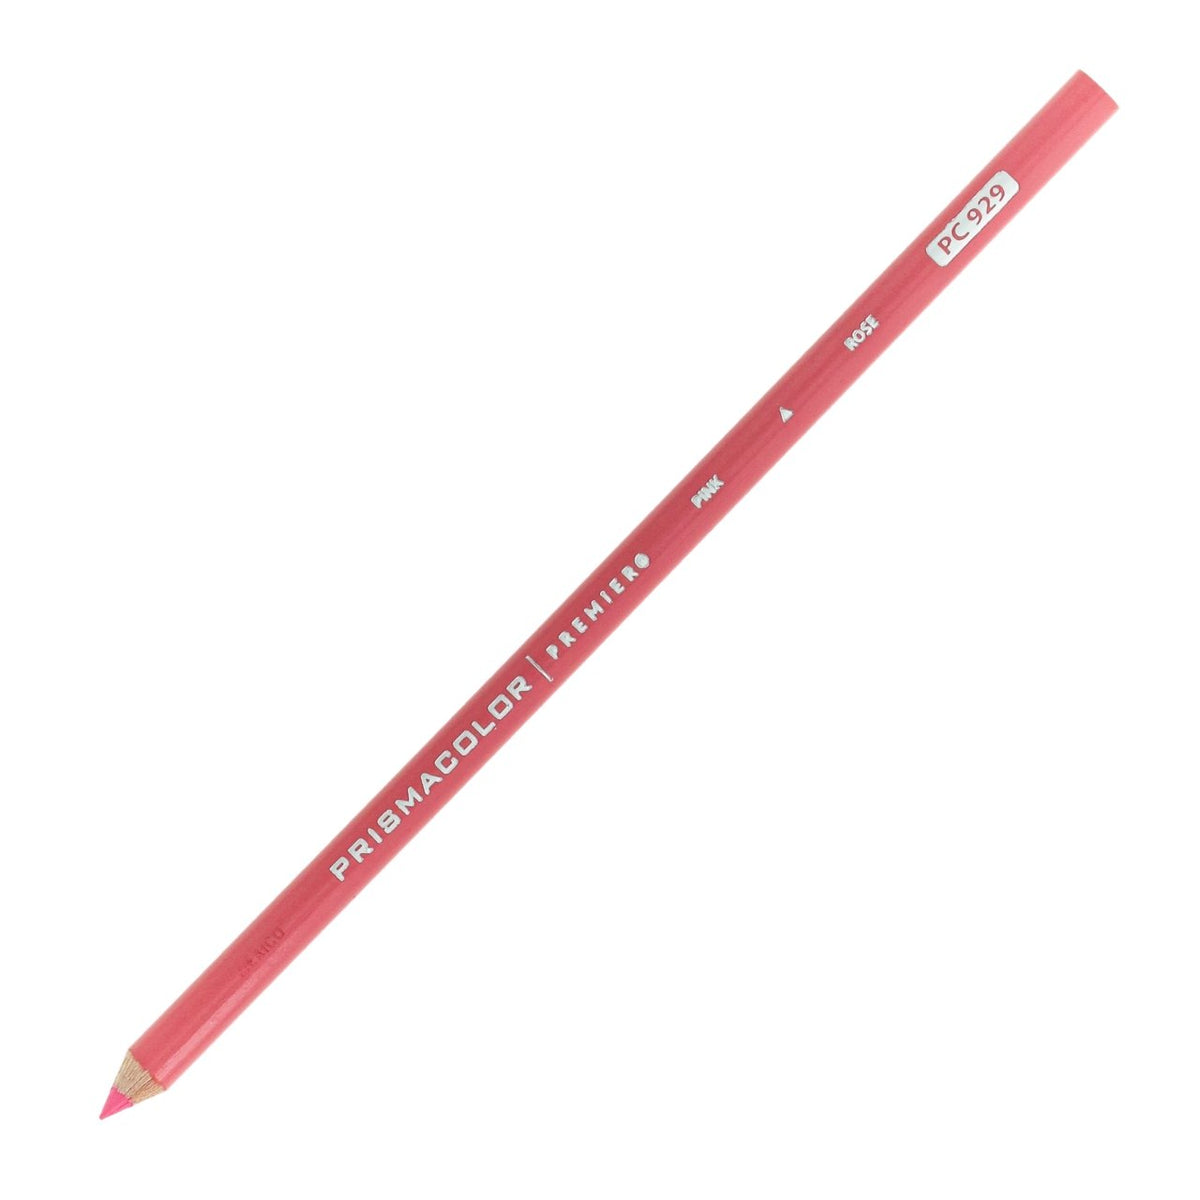 Prismacolor Premier Colored Pencil - Pink 929 - merriartist.com